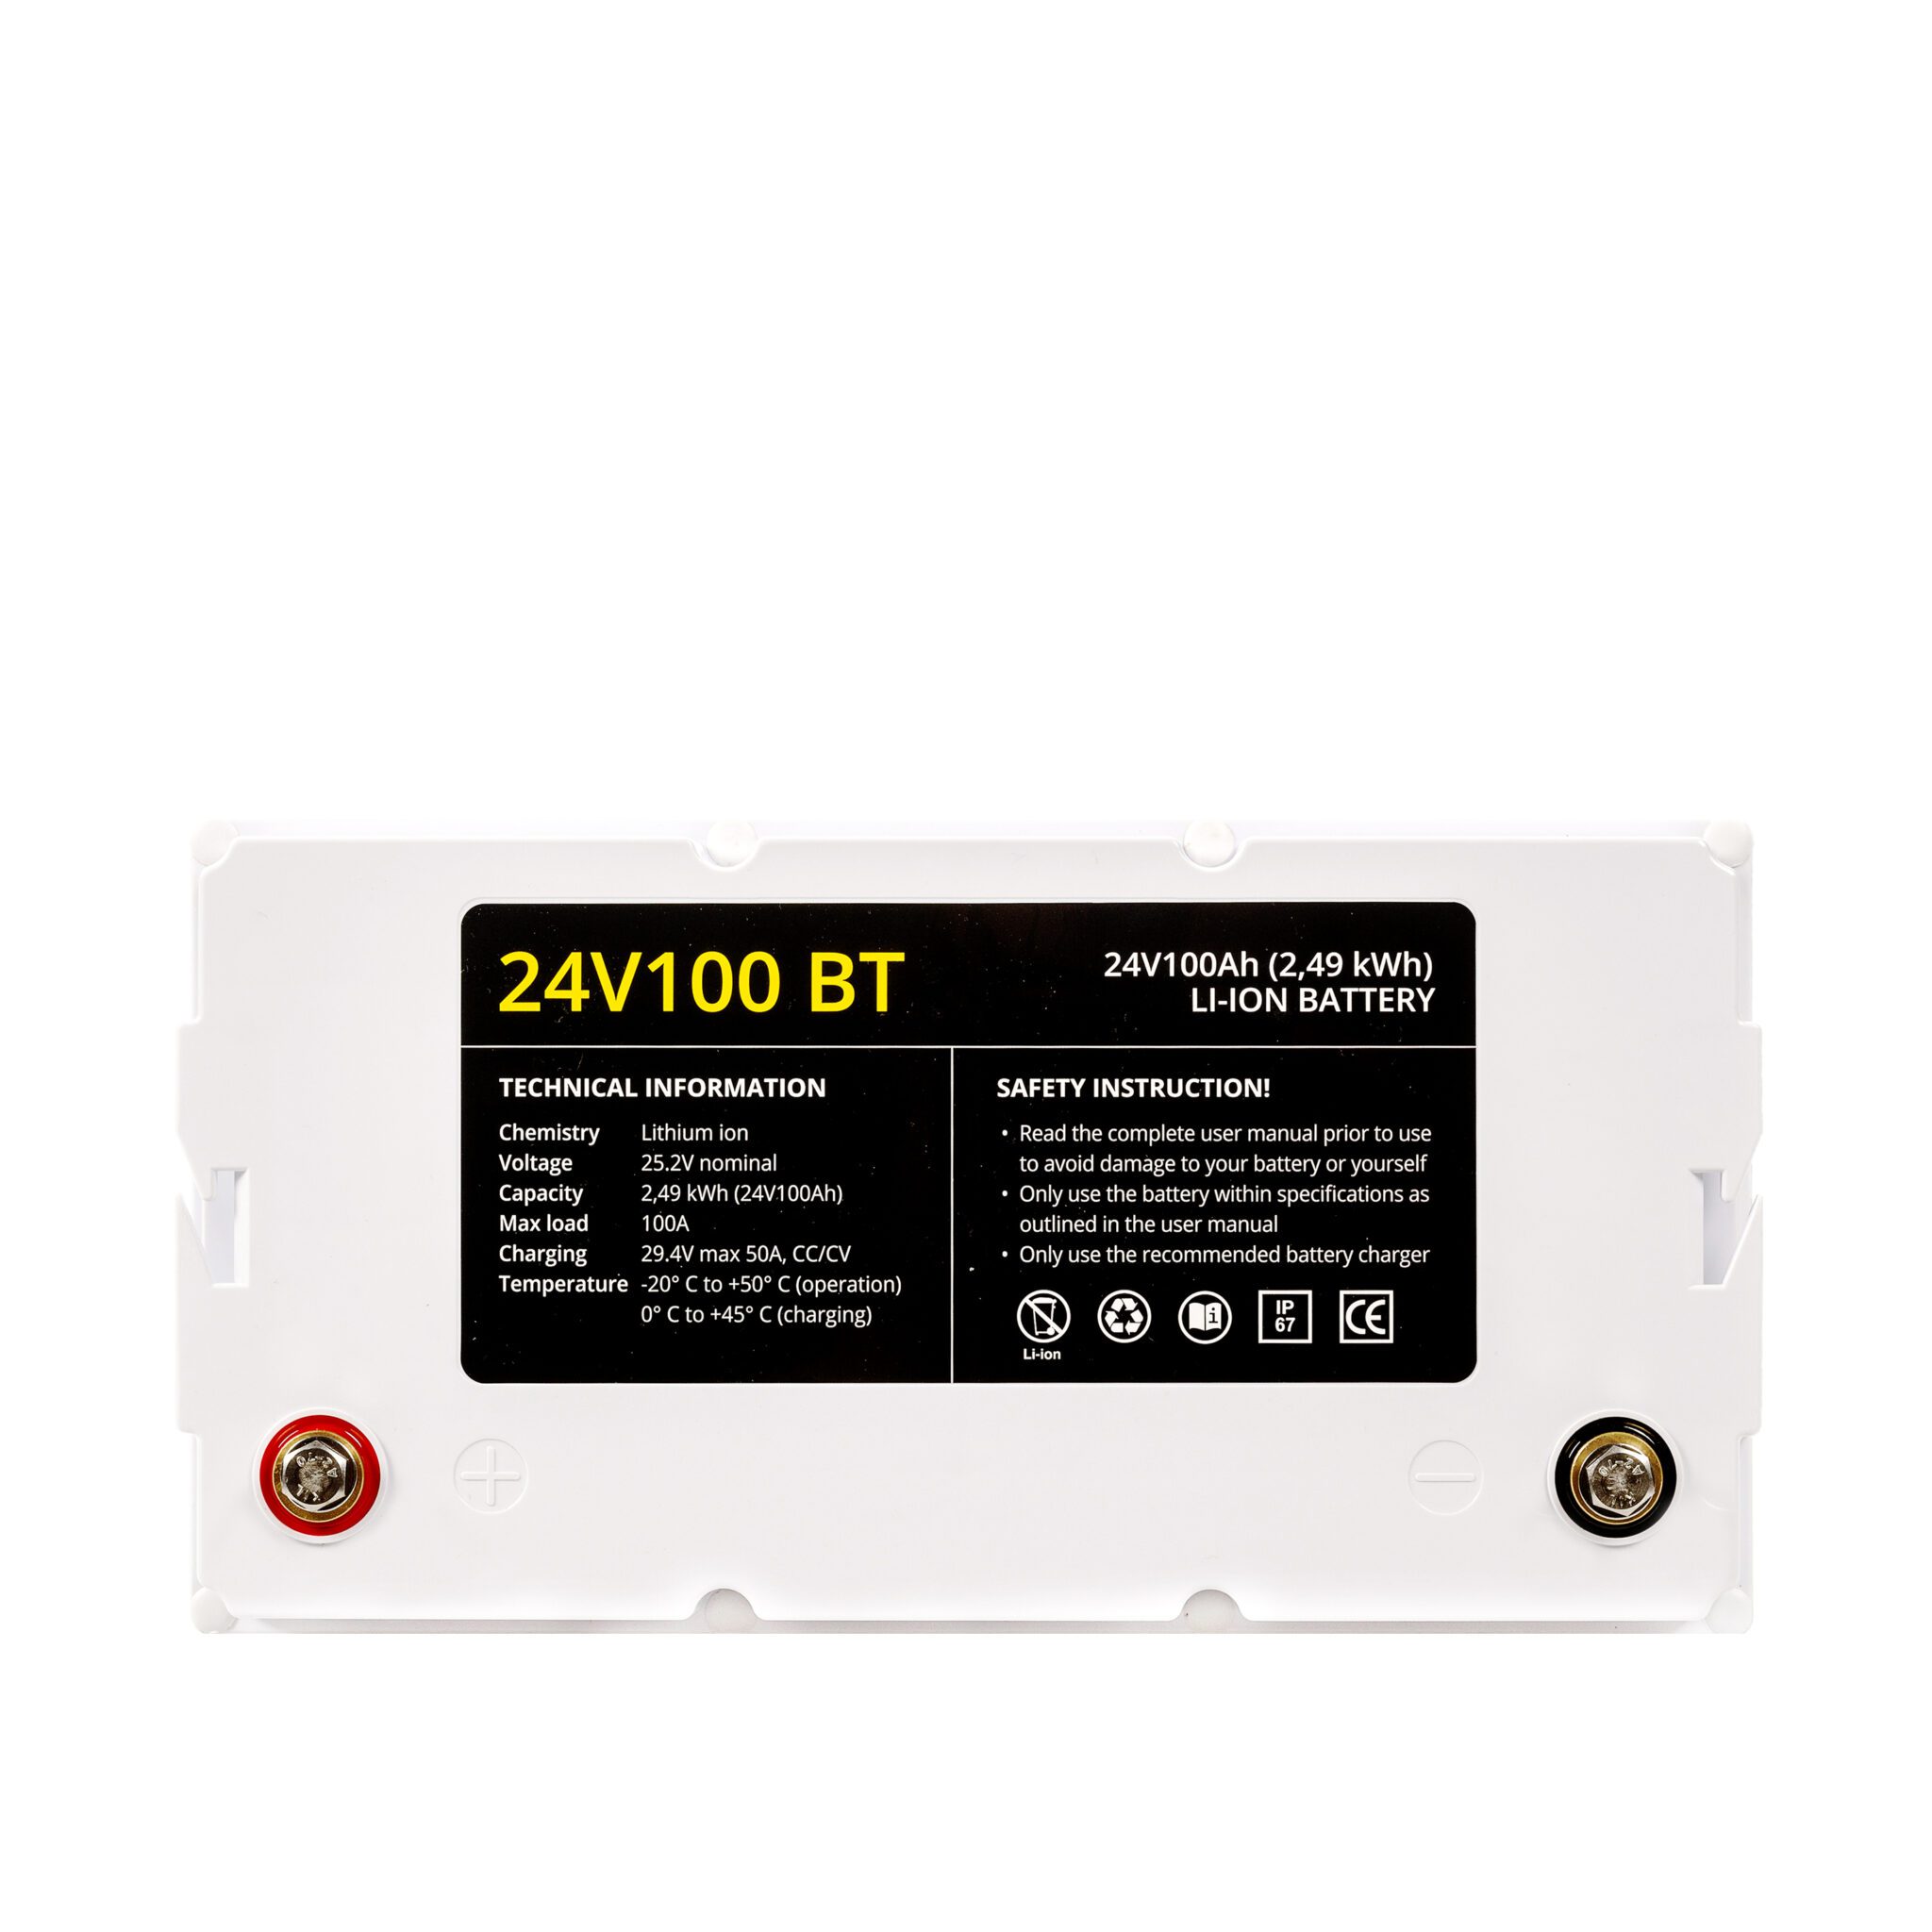 24V100 BT Lithium Battery